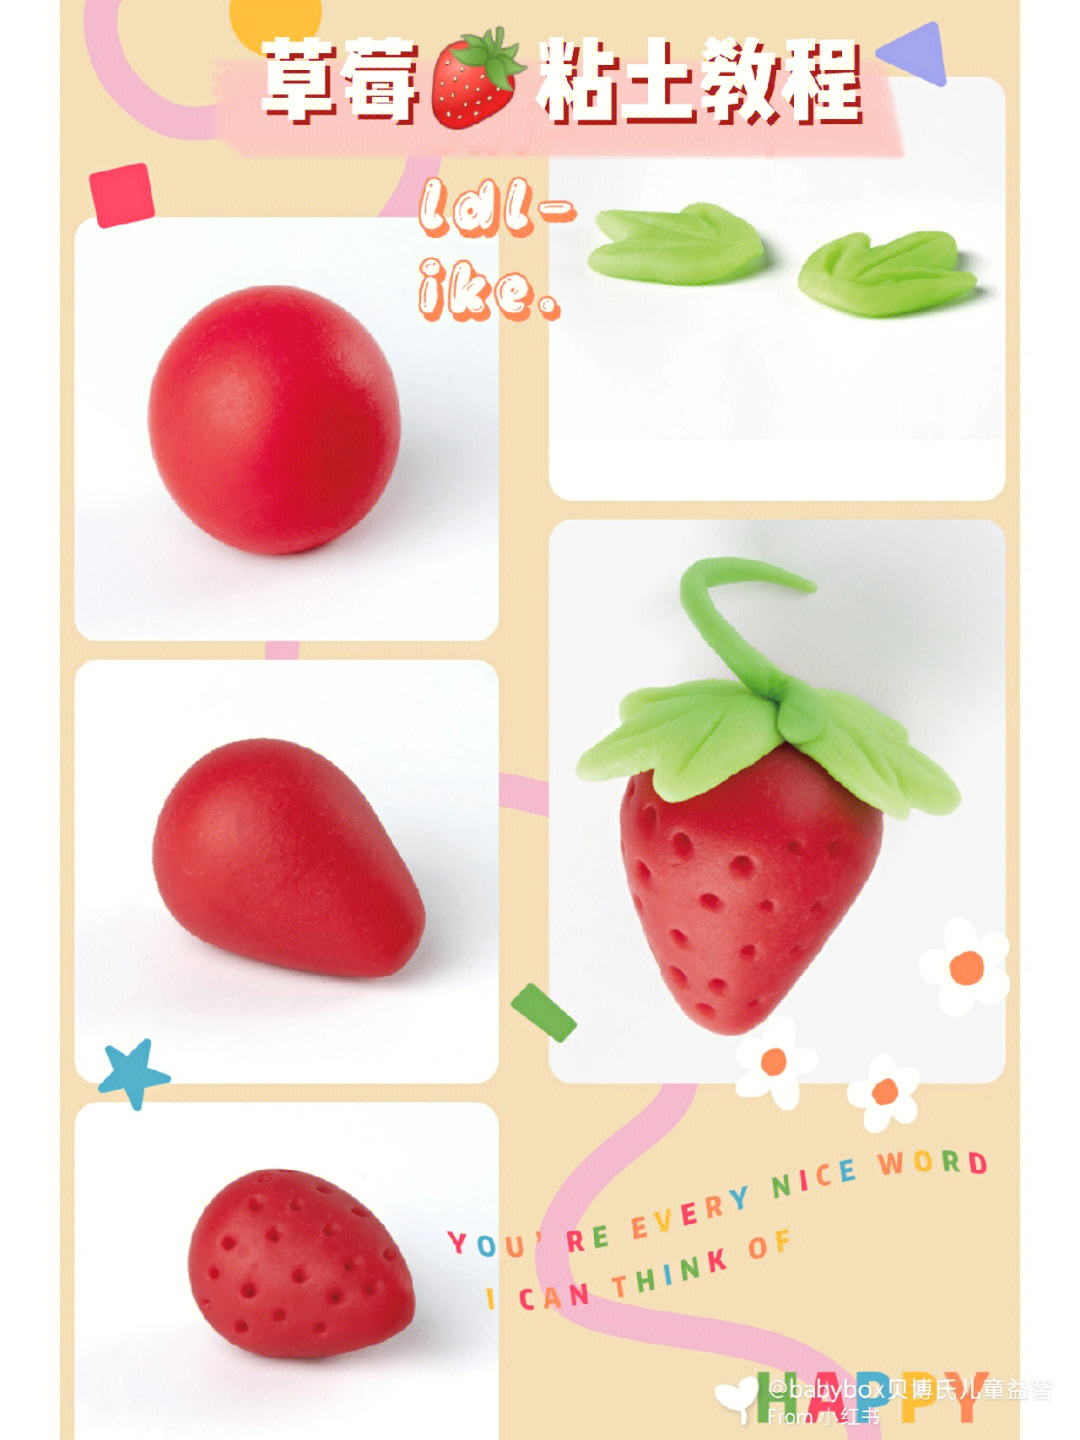 黏土制作草莓图片